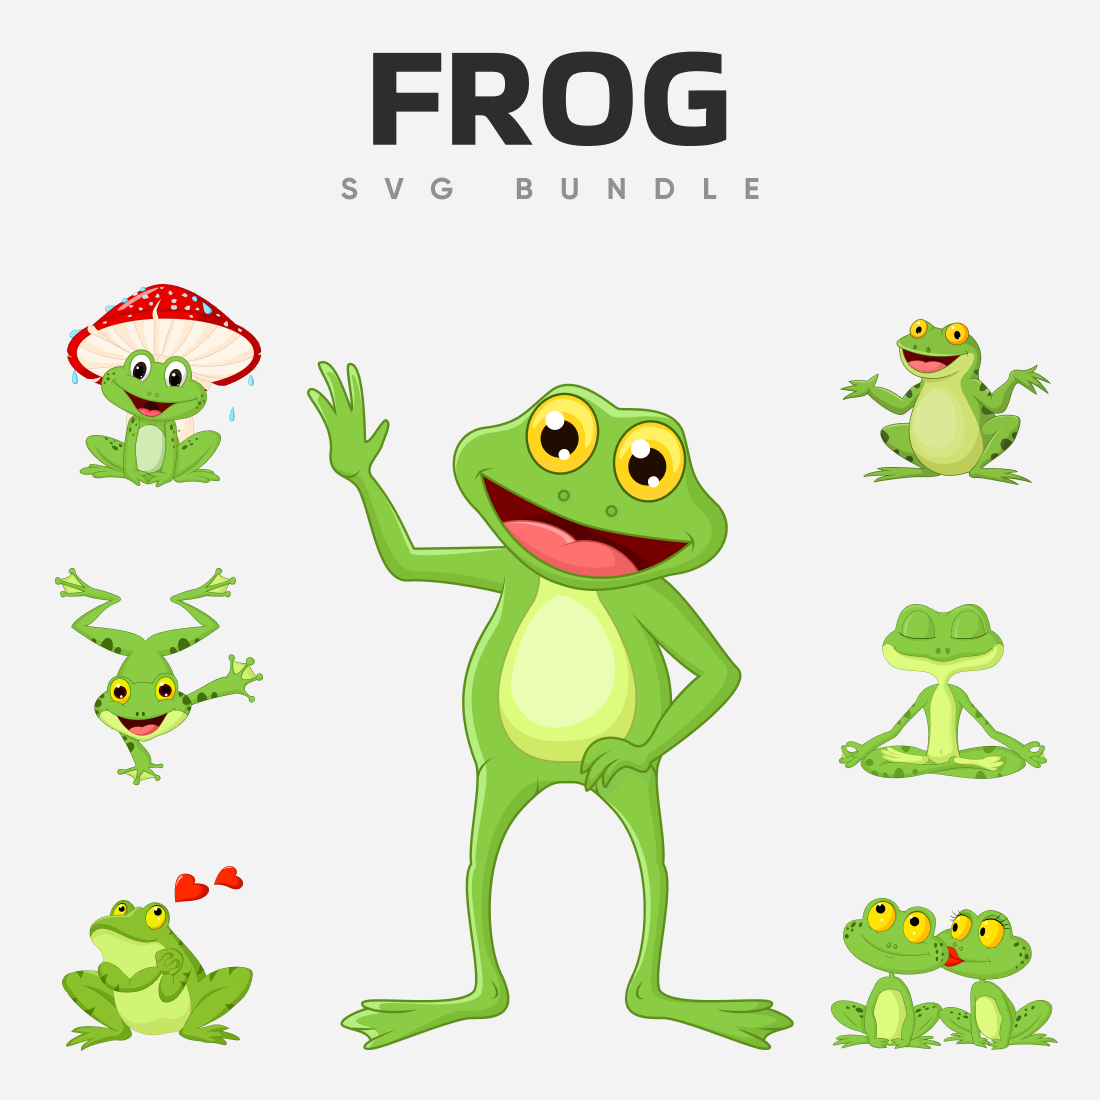 Funny frog SVG bundle.